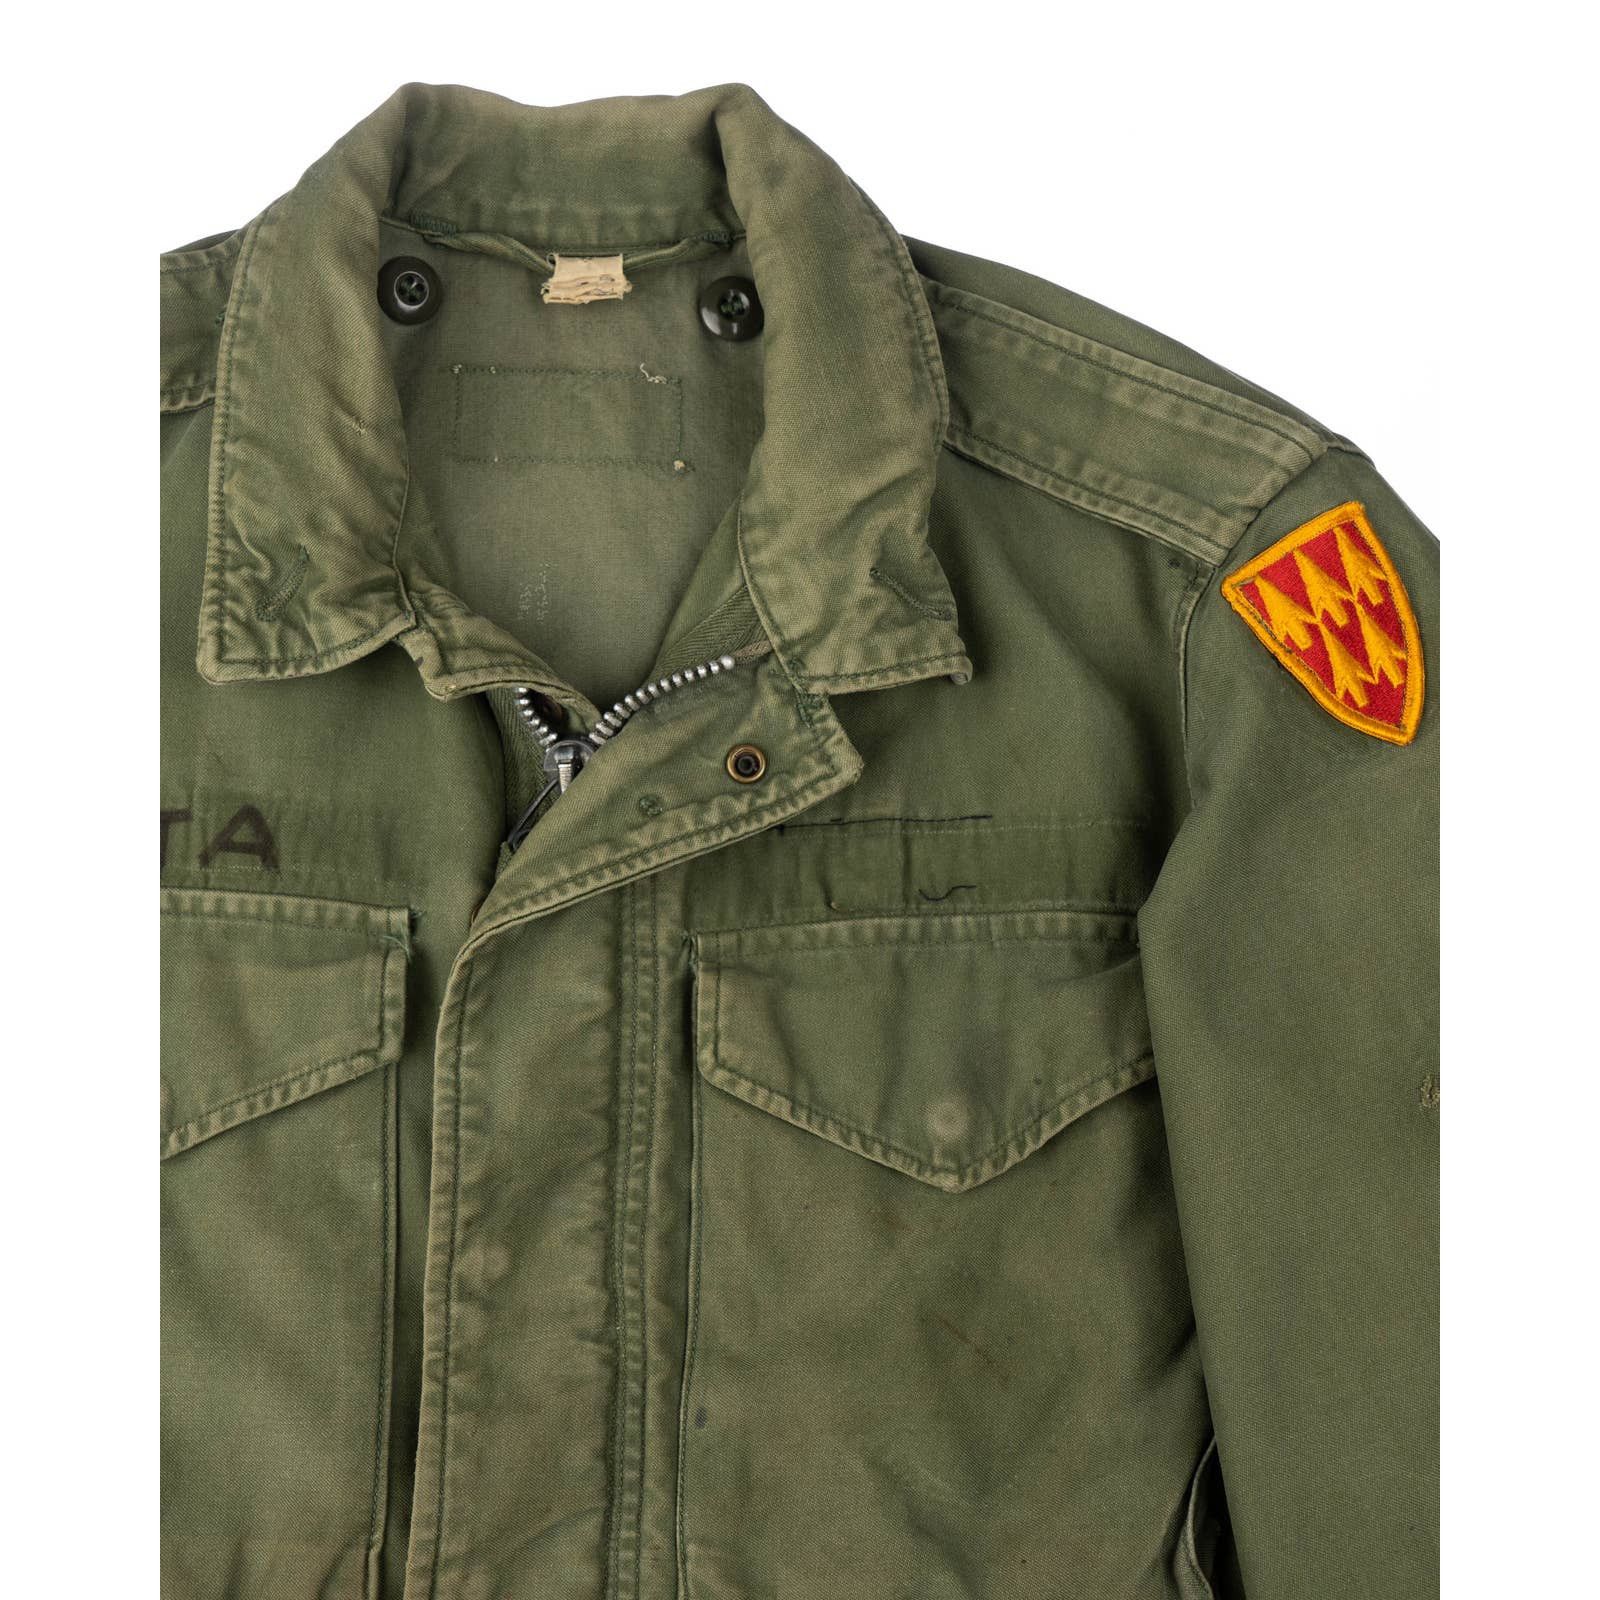 Vintage 60’s M-65 Field Jacket - Medium Size US M / EU 48-50 / 2 - 3 Preview